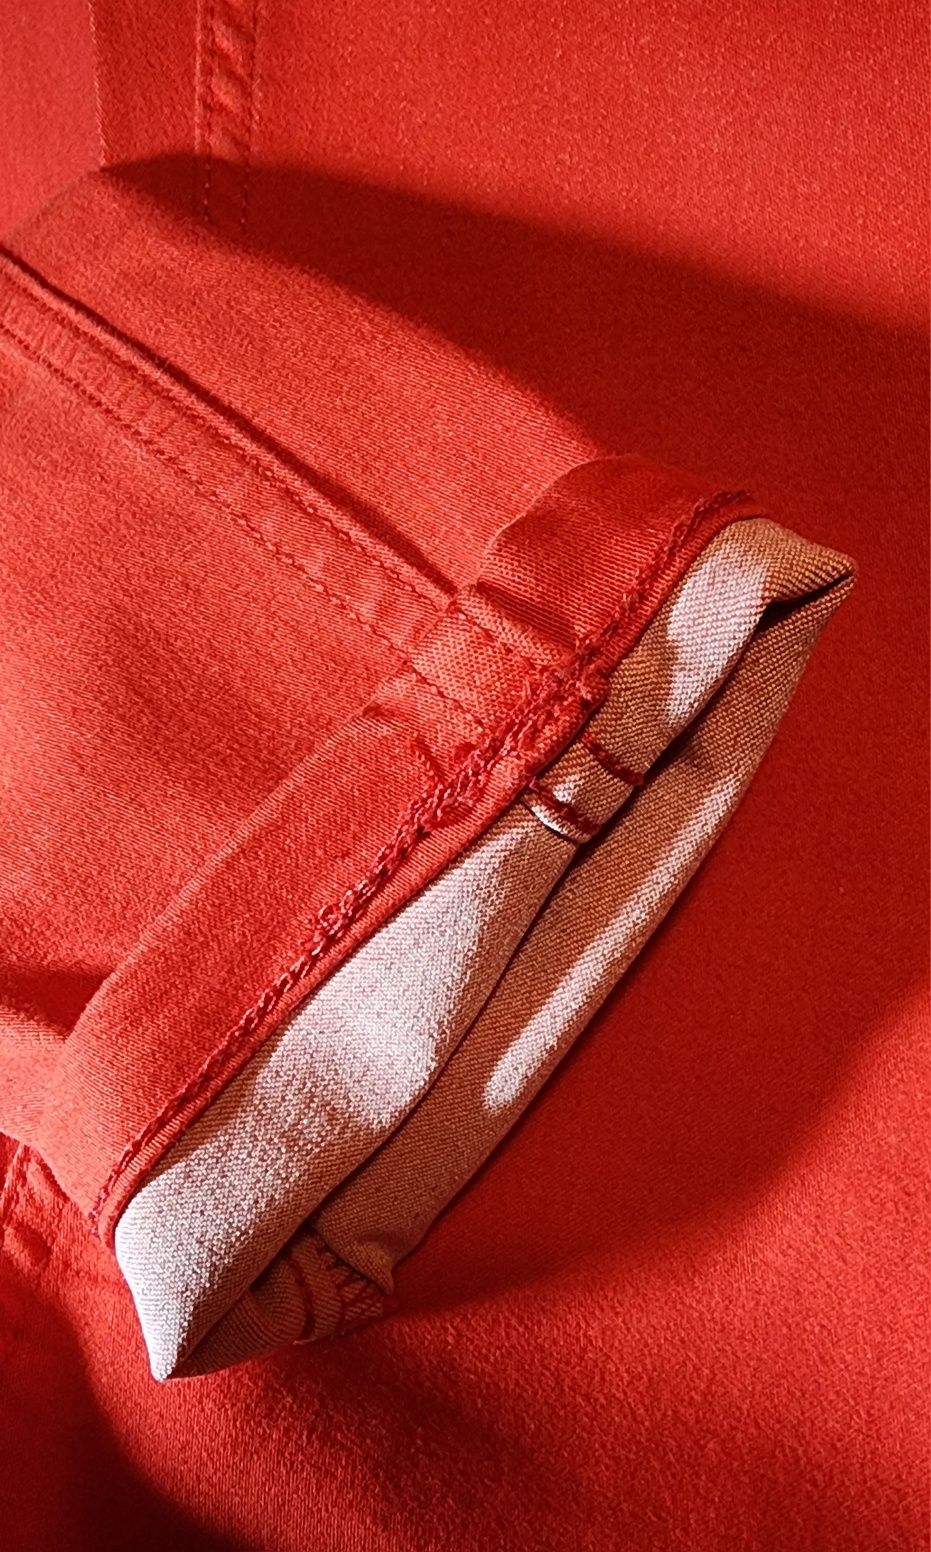 Spodnie damskie DIVERSE, czerwone